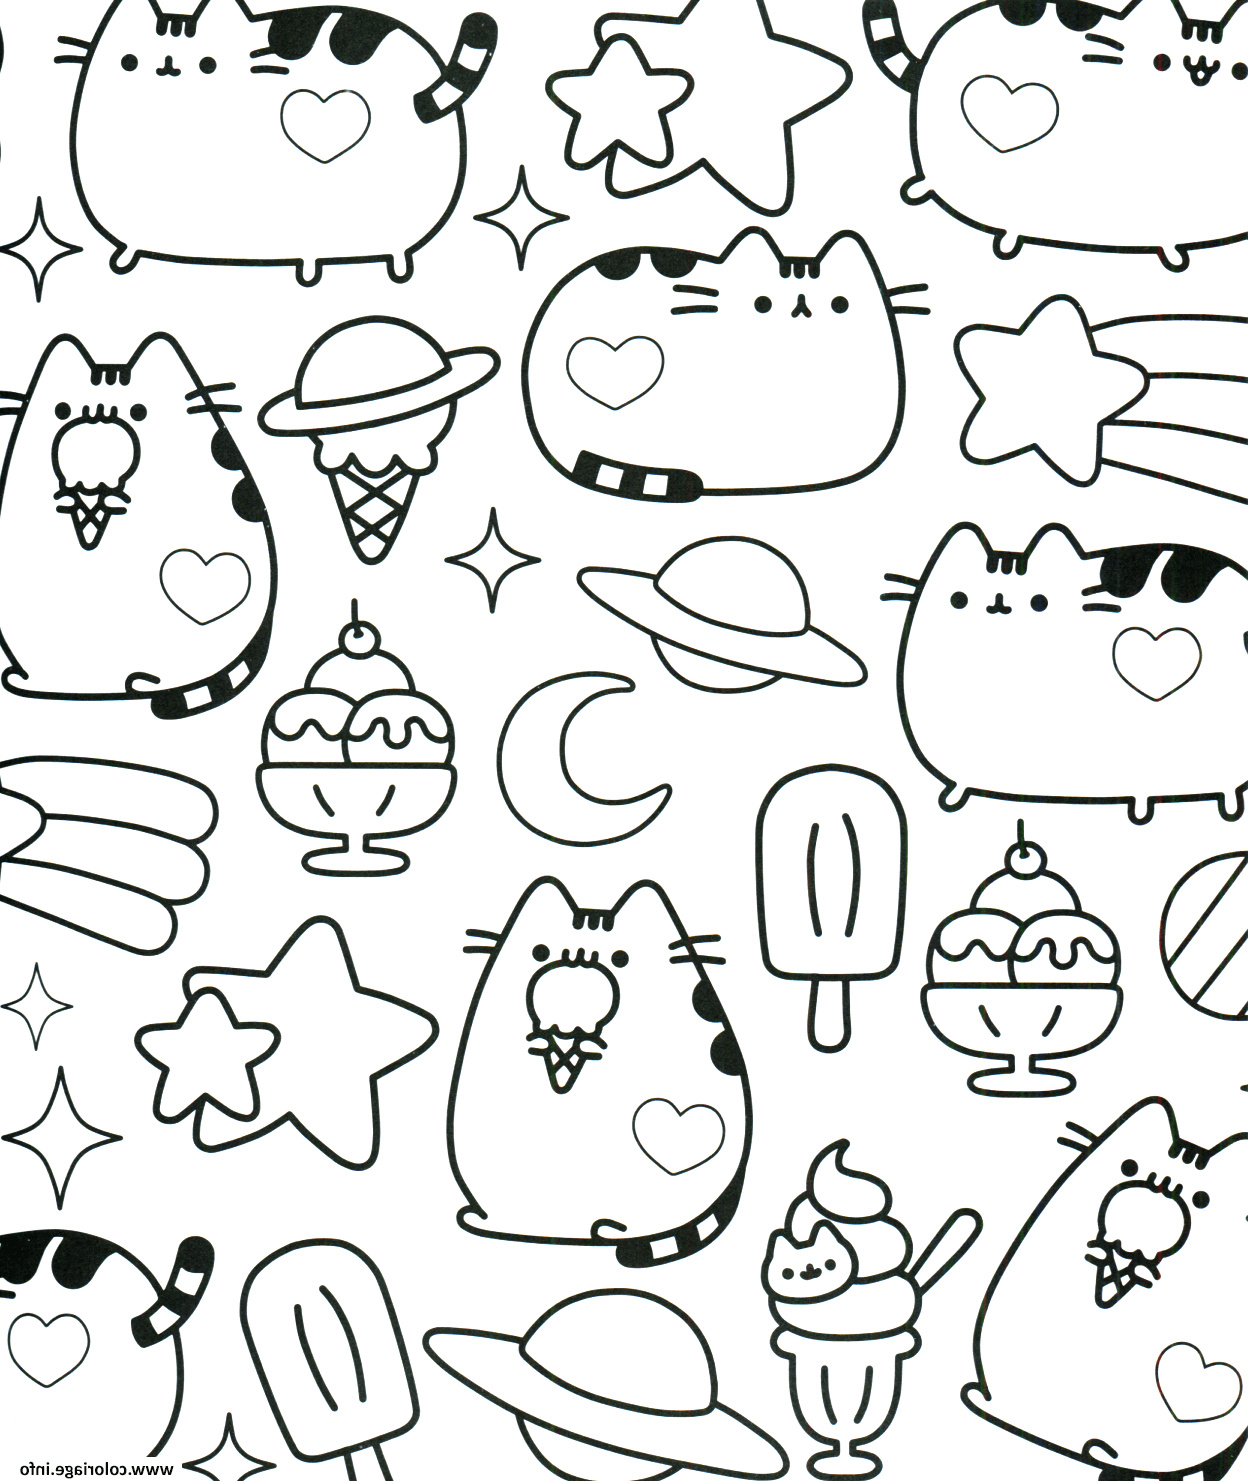 Coloriage À Imprimer Kawaii Unique Image Coloriage Kawaii Pusheen destiné Coloriage Manga Kawaii À Imprimer